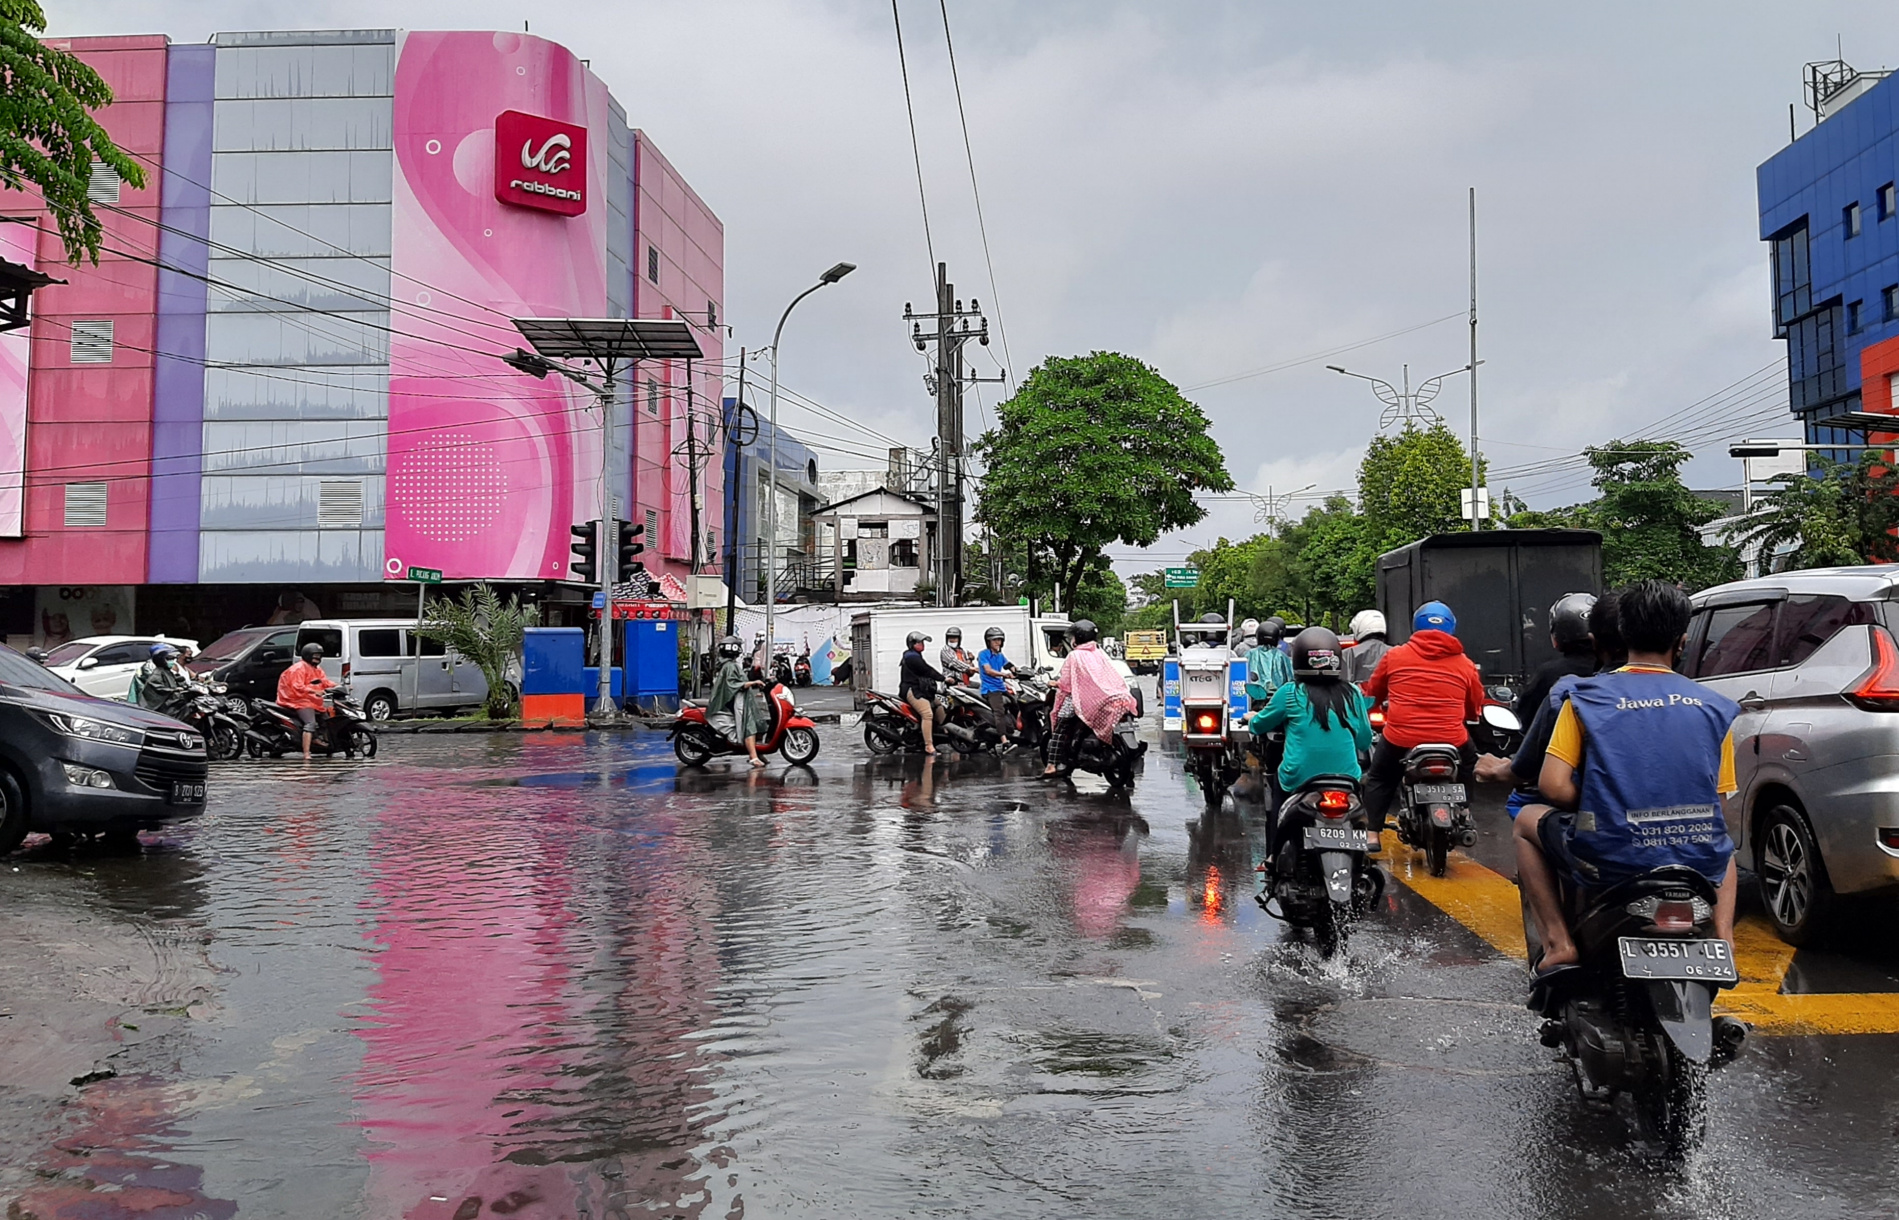 Banjir semata kaki di daerah Pucang yang menimbulkan kemacetan, Sabtu 27 Februari 2021. (Foto: Pita Sari/Ngopibareng.id)